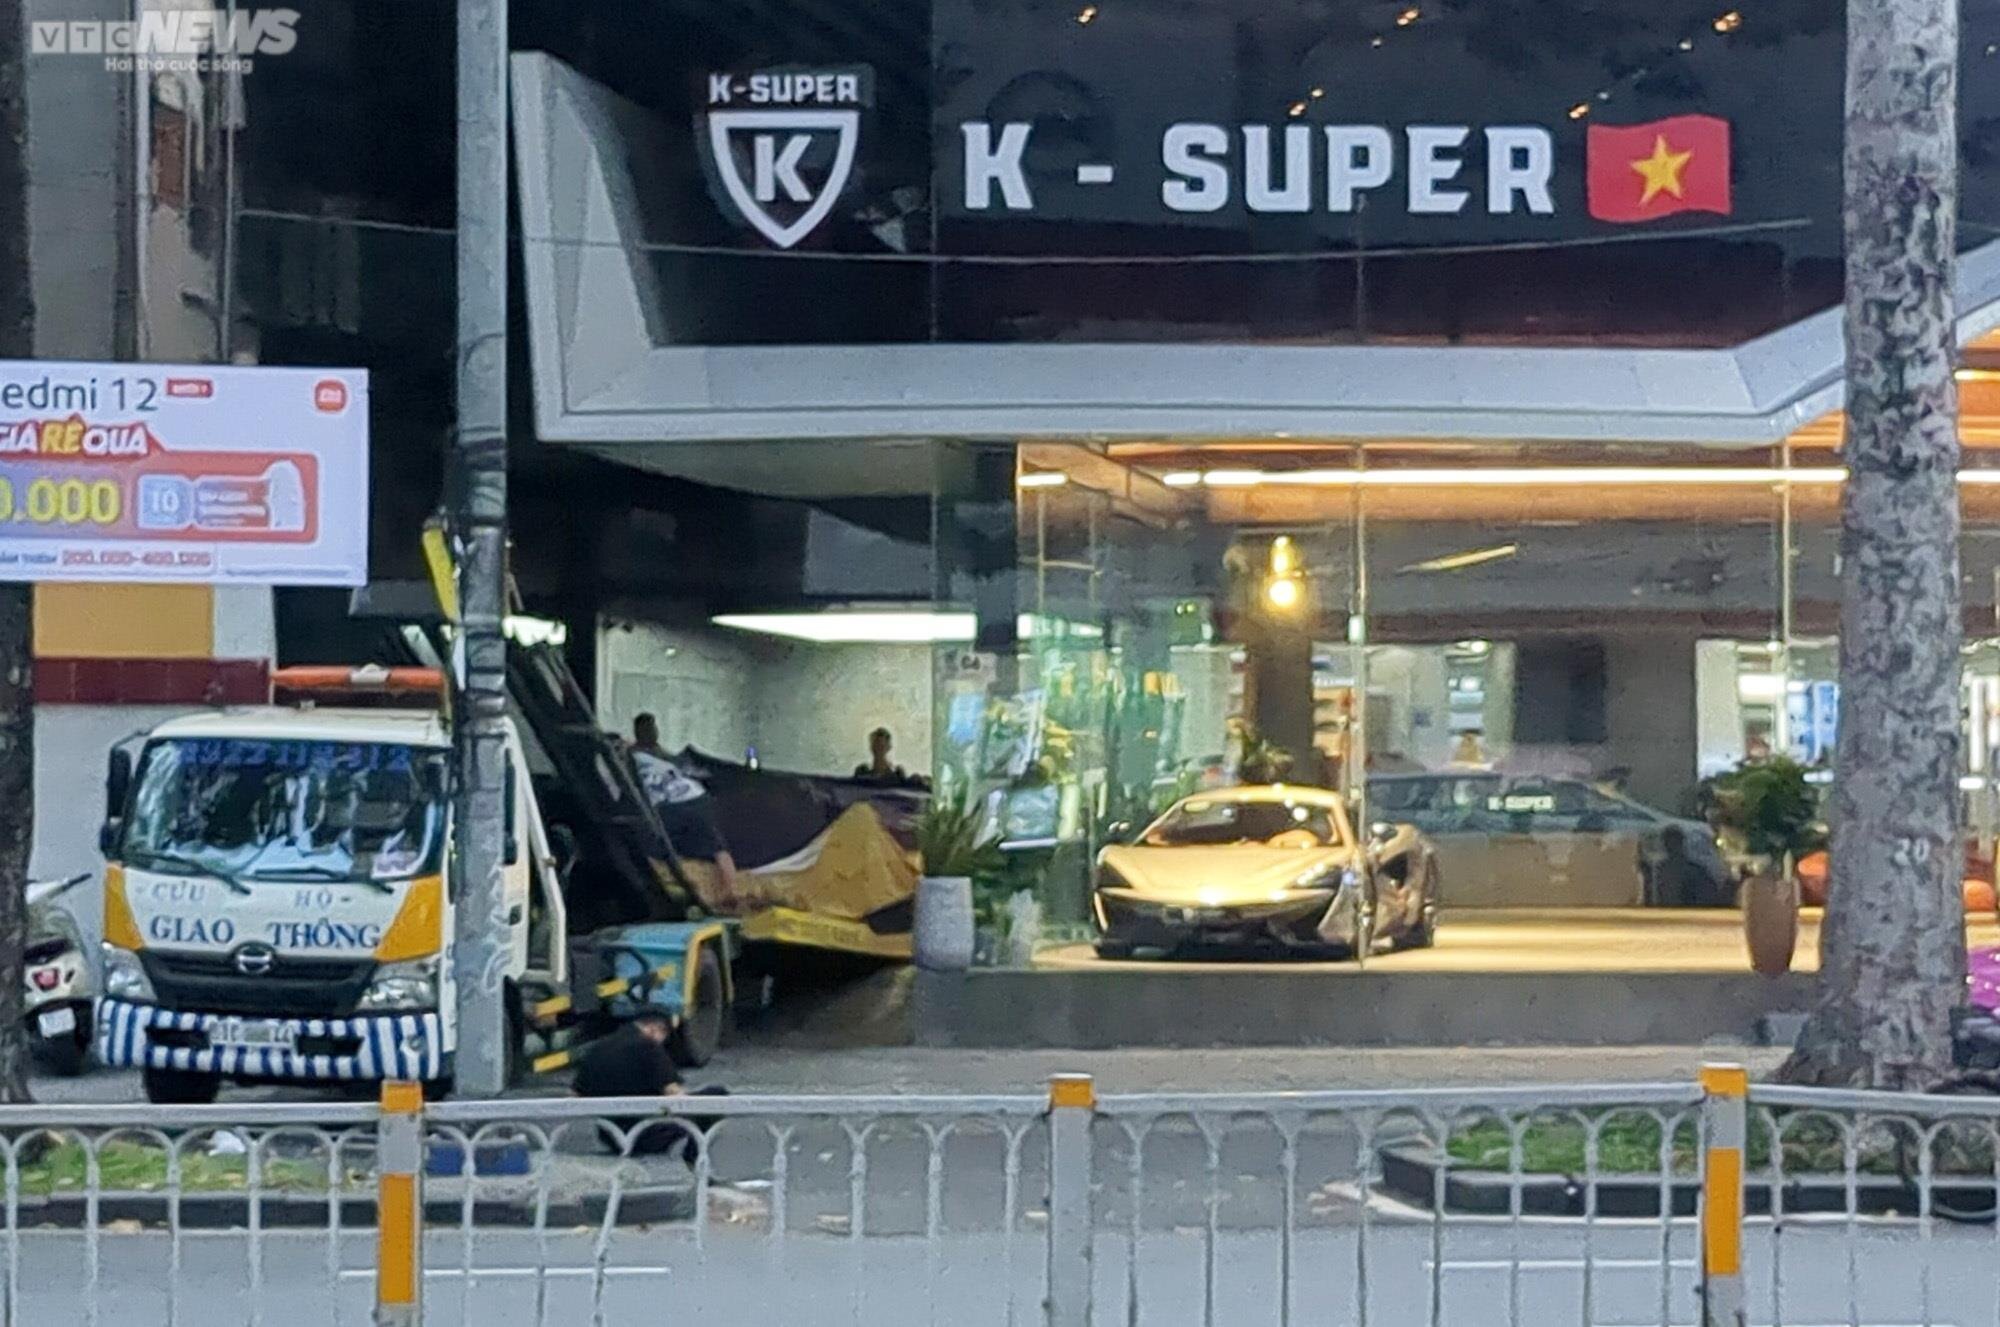 Ghi nhận của PV VTC News, lúc gần 19h, tại cửa hàng K-Supper kinh doanh siêu xe trên đường Trần Hưng Đạo (quận 1, TP.HCM) do Phan Công Khanh làm chủ, các nhân viên cẩu lên xe tải di chuyển đến nơi khác.